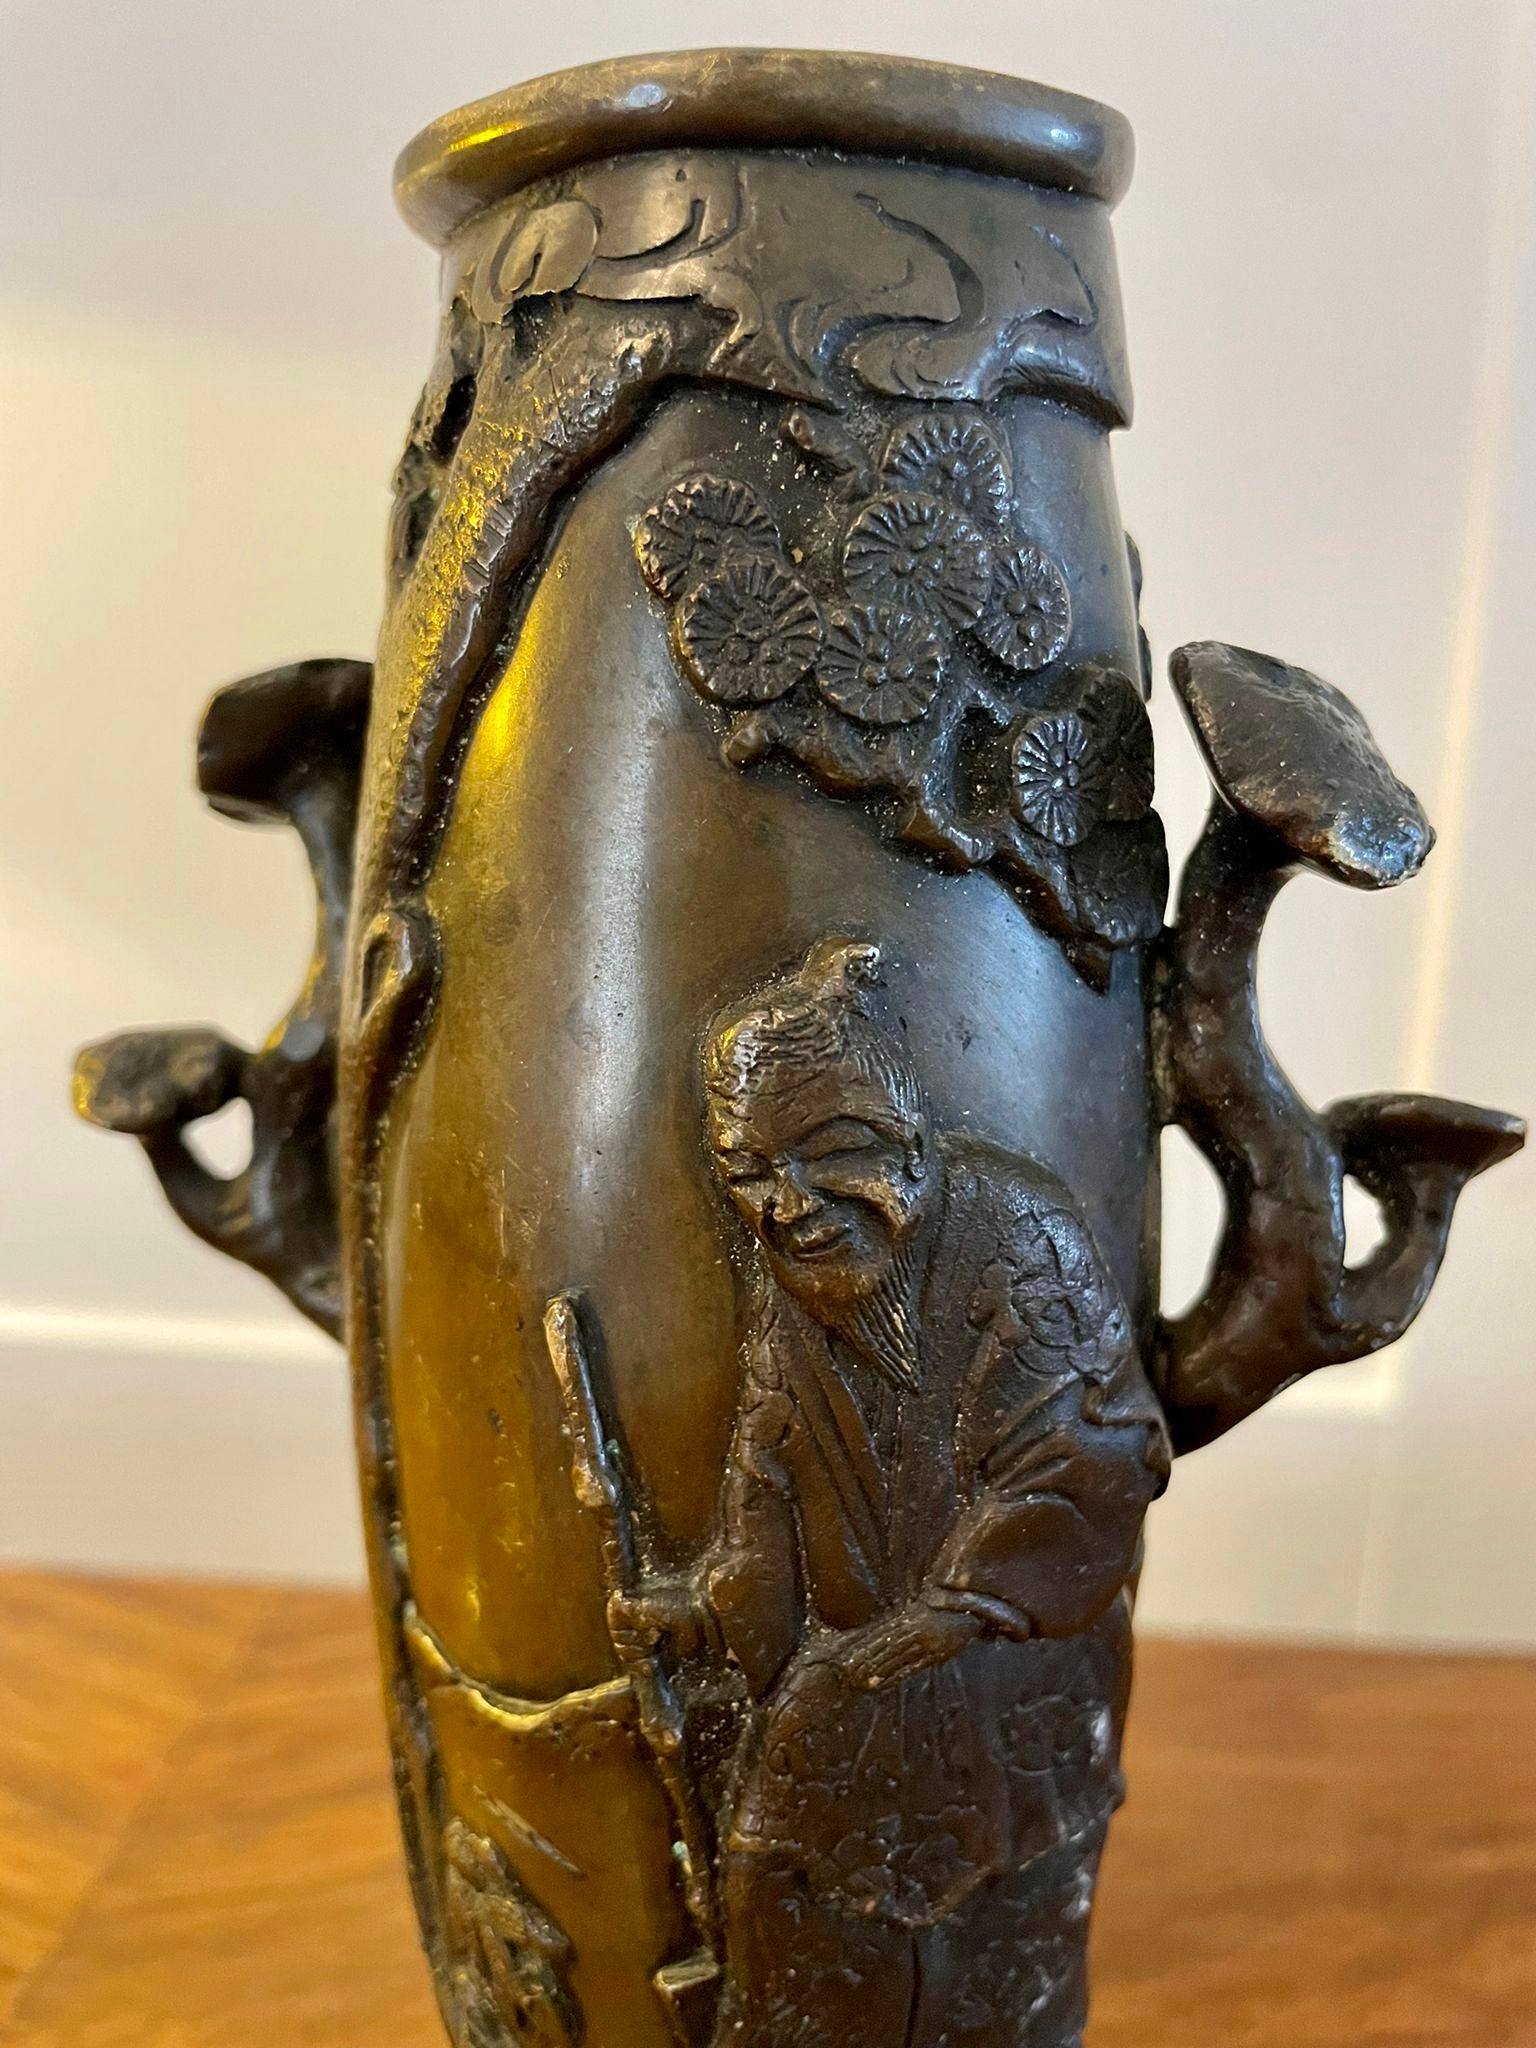 Vase en bronze chinois ancien de qualité avec un vase en bronze chinois orné de qualité présentant un arbre en fleurs, un personnage masculin oriental et une femme orientale debout avec une grue

Mesures : H 18 x L 10 x P 6cm
Date 1880.
  